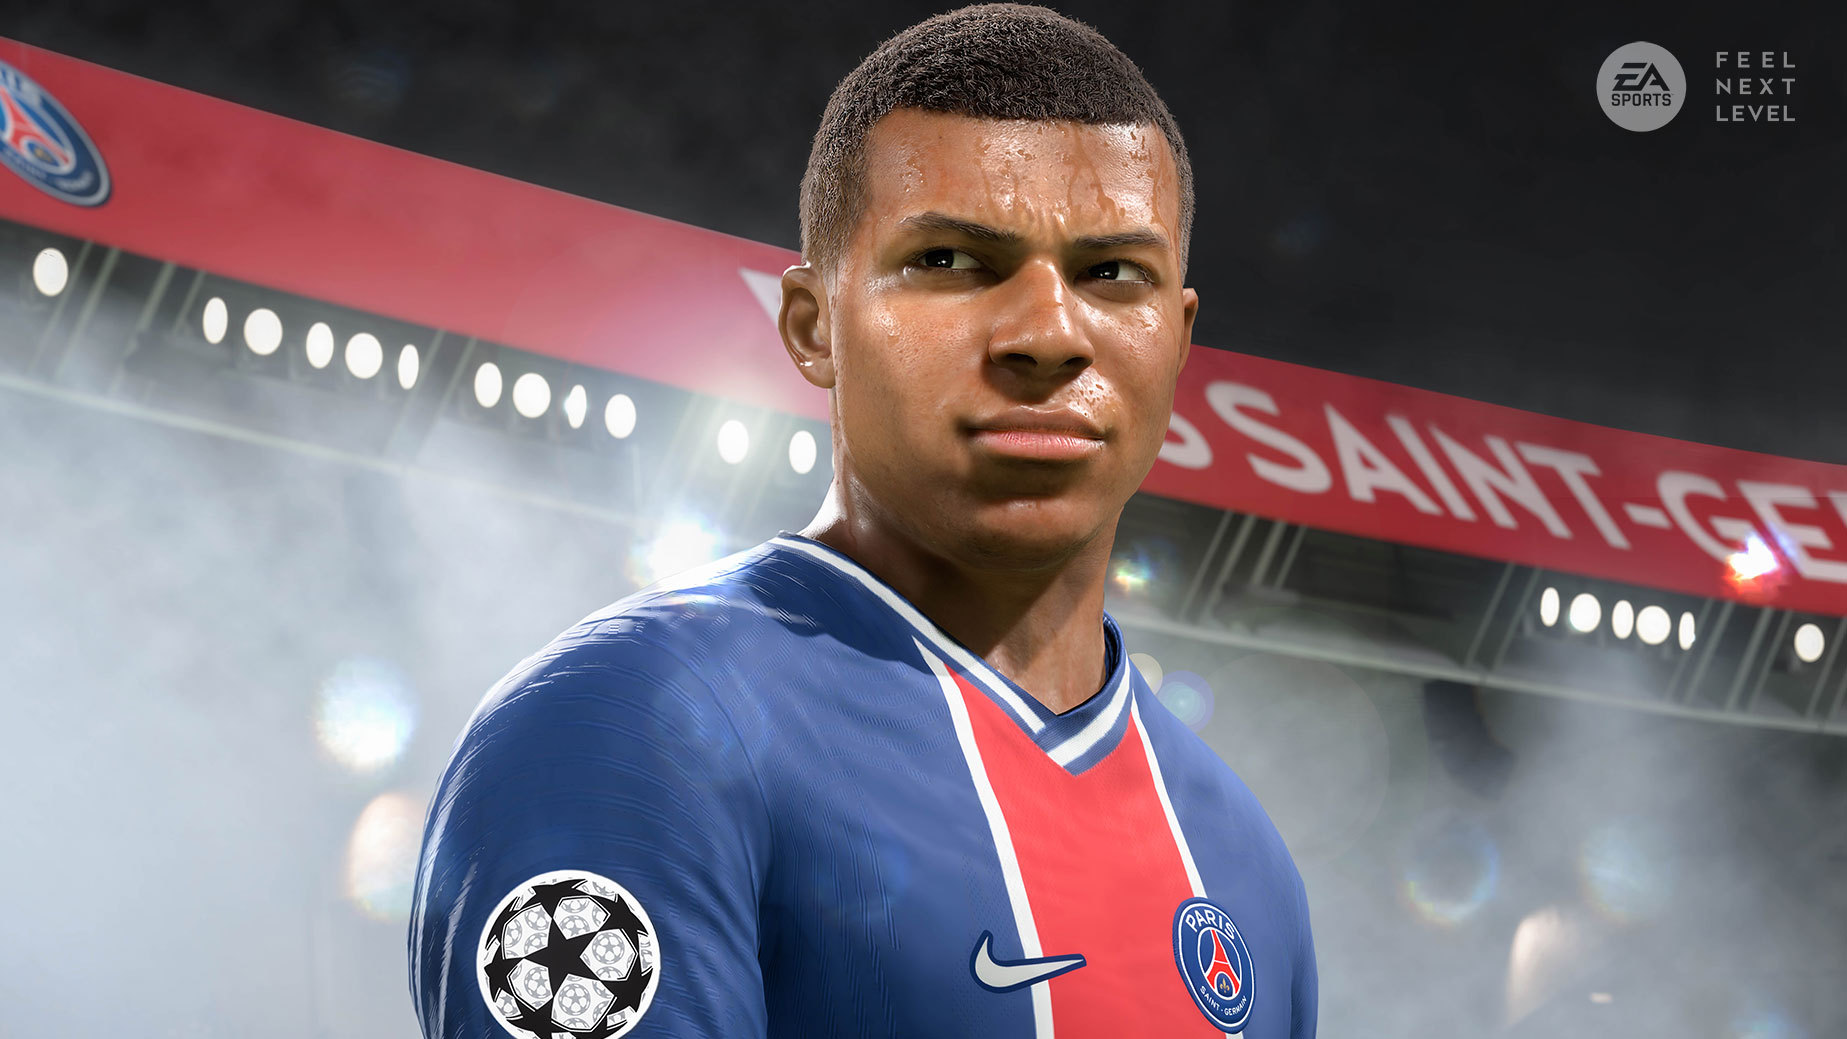 Jogos: FIFA 21 anuncia novidades para a nova geração